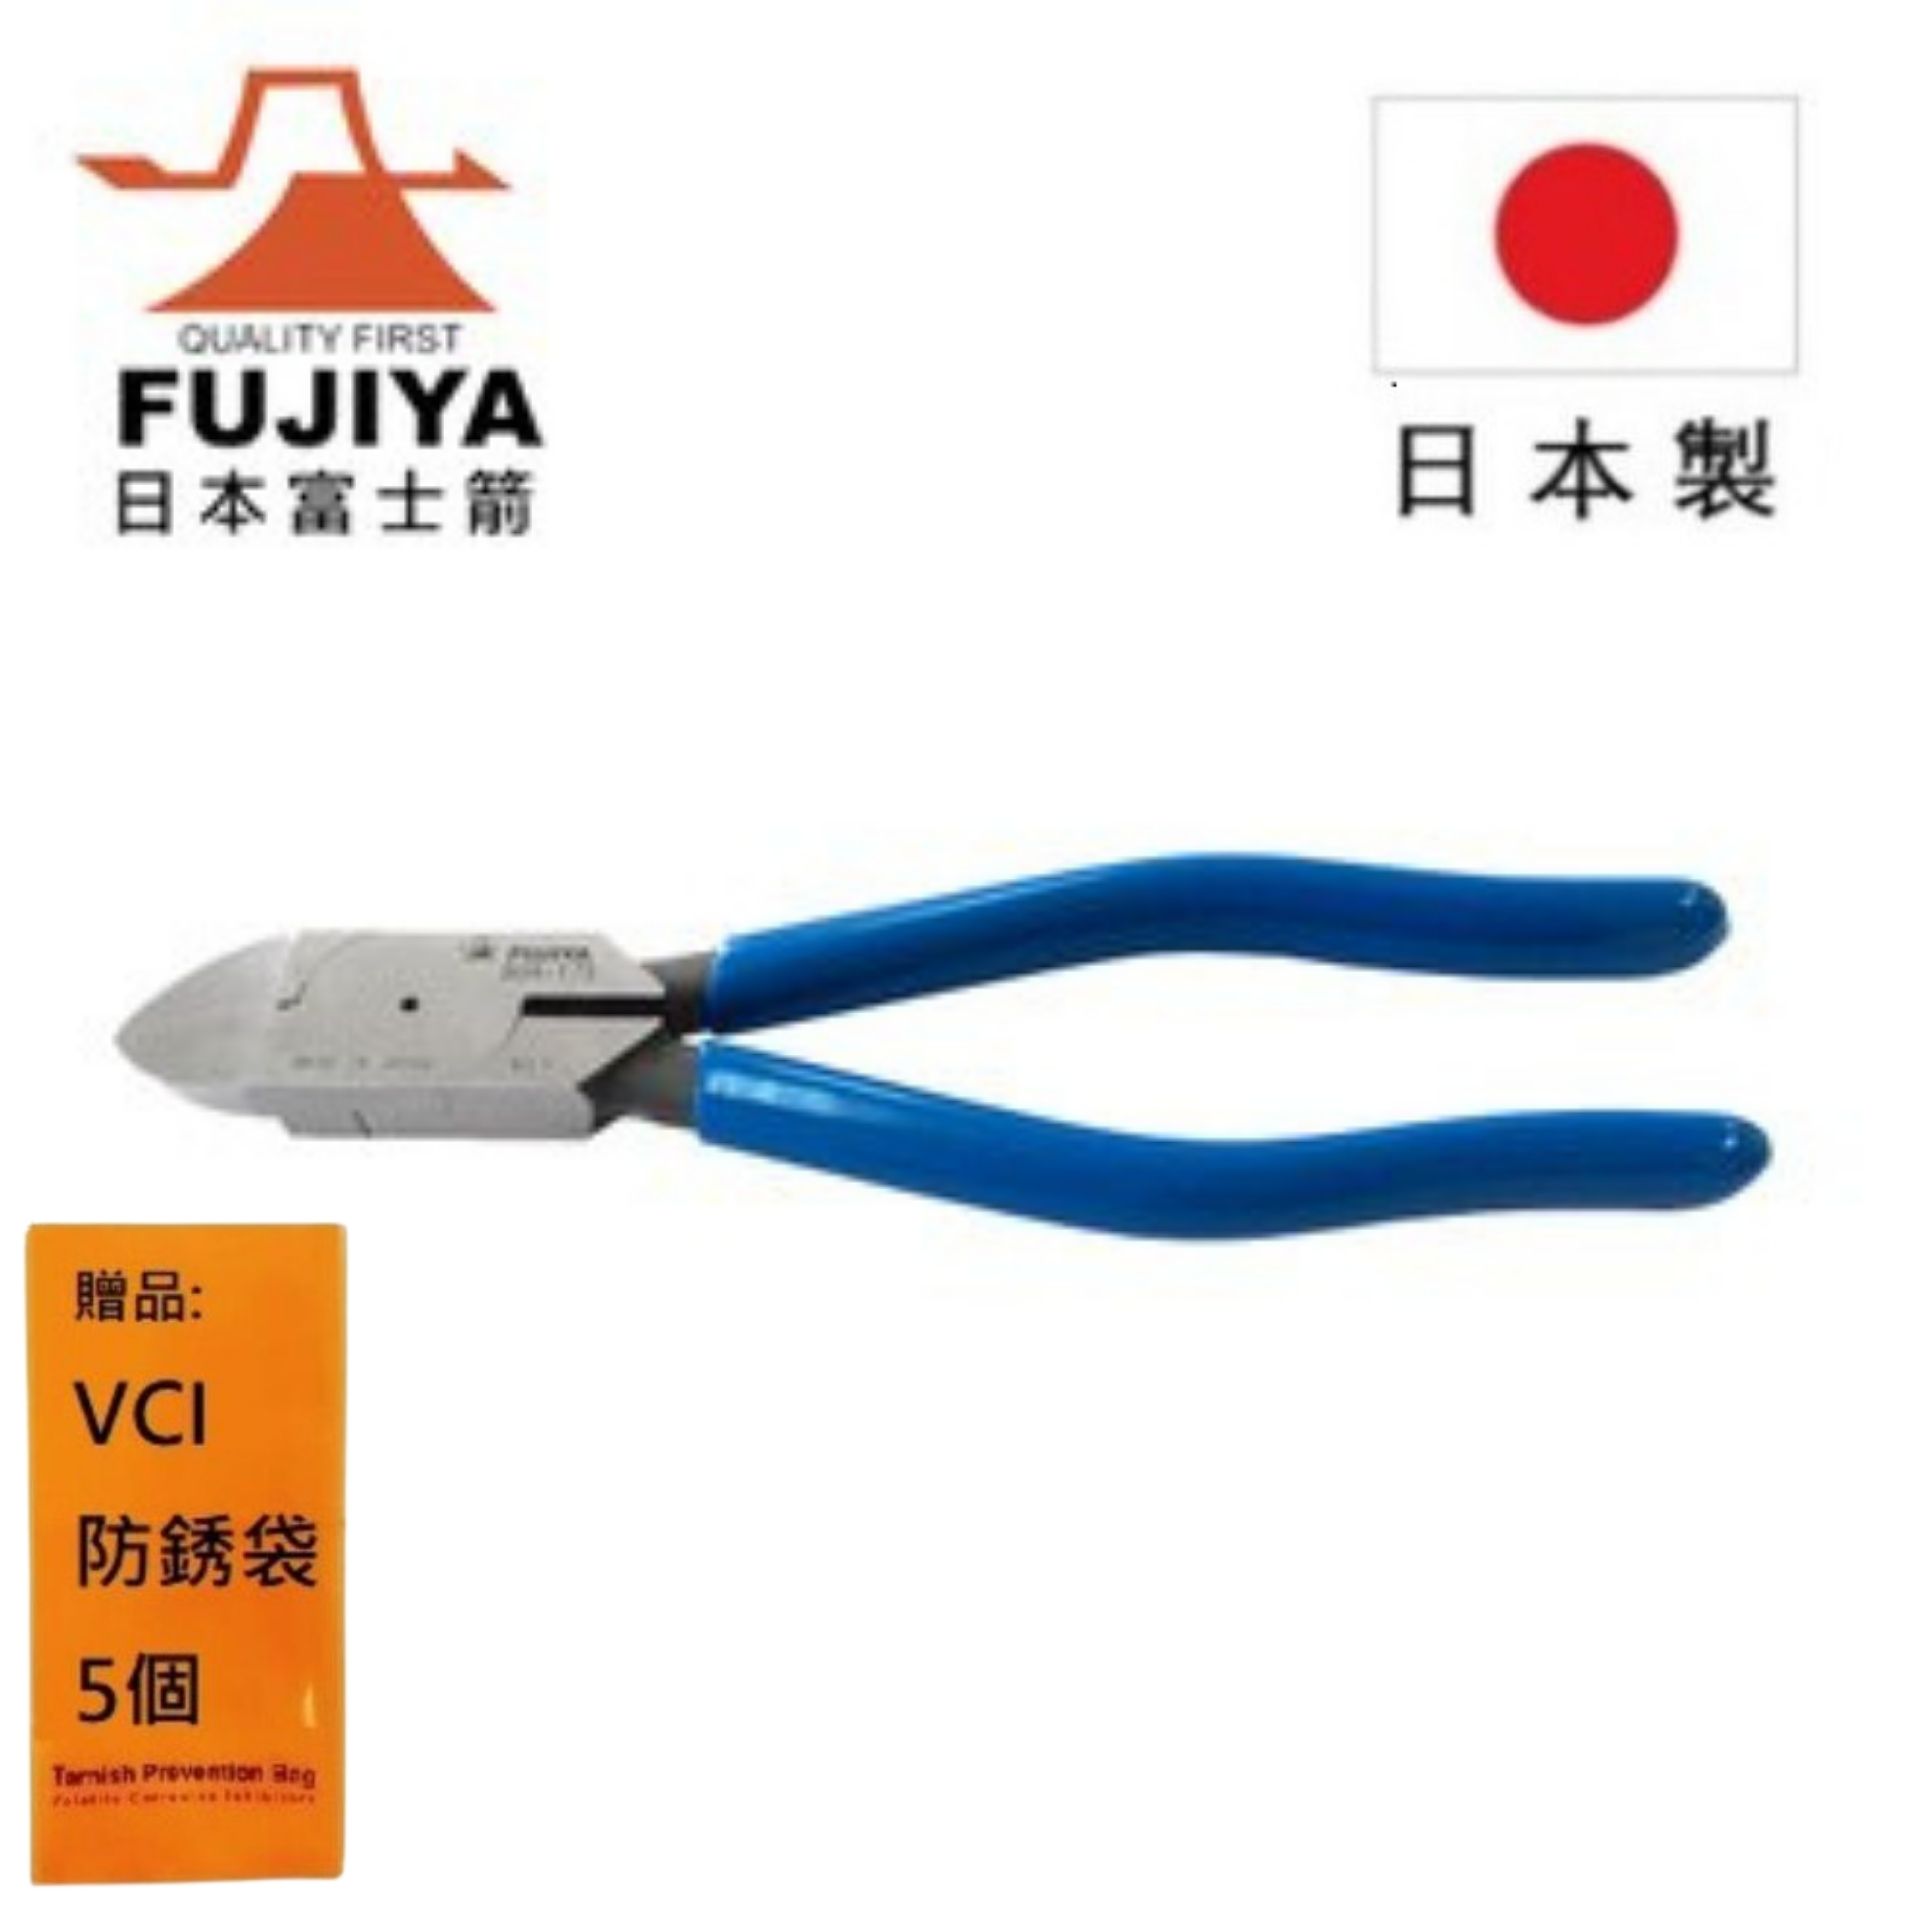 【日本Fujiya富士箭】 平刃塑膠斜口鉗 175mm 90AS-175.90AS-200